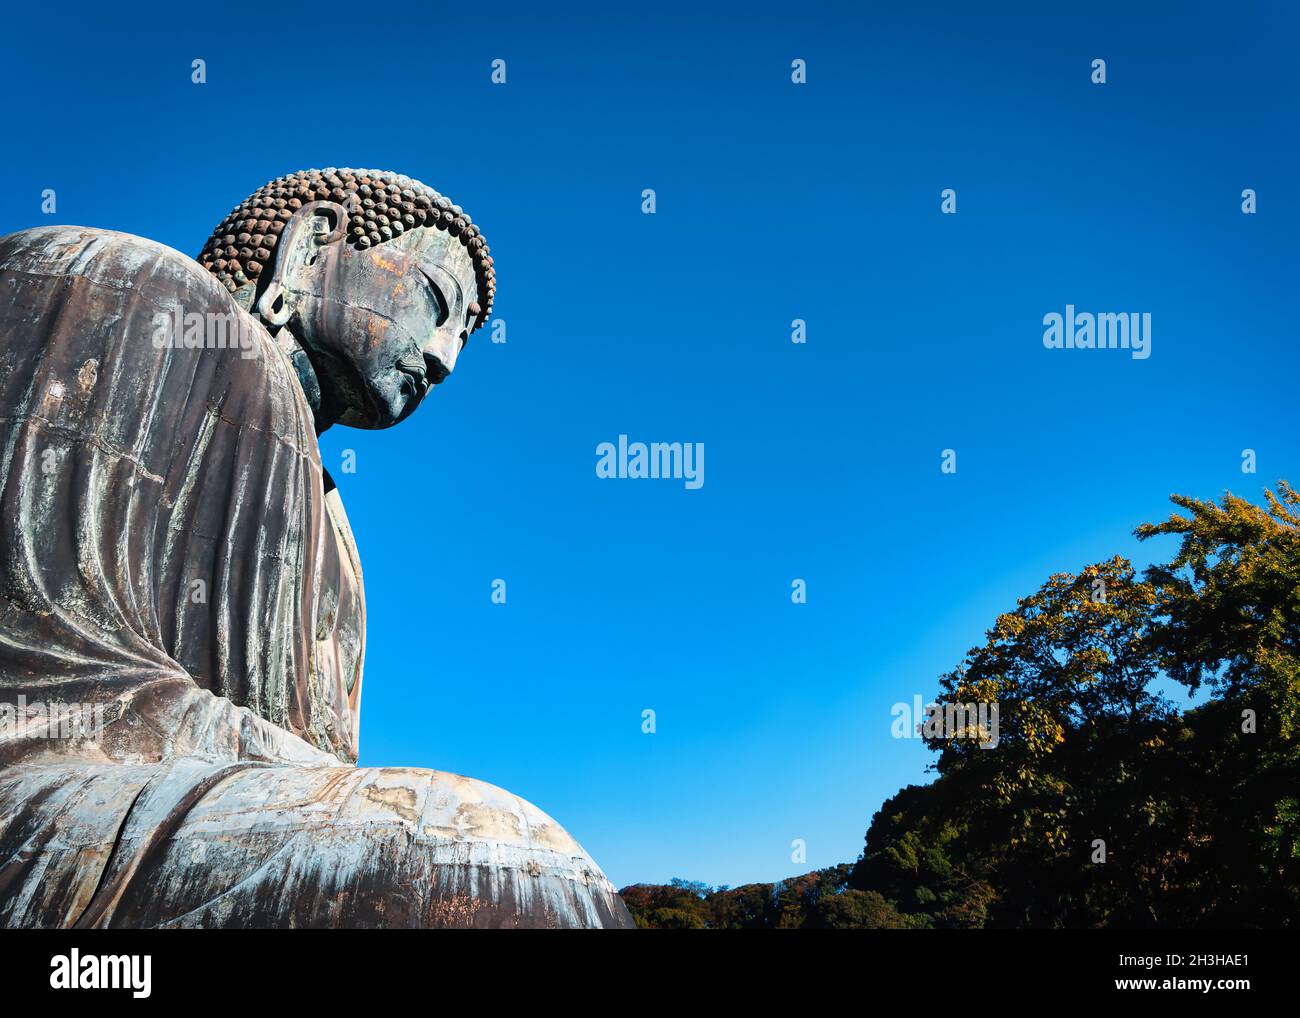 Der große Buddha, oder Kamakura Daibutsu, die 43 Fuß hohe und 103 Tonnen schwere Statue wurde 1252 fertiggestellt und steht in Kamakura, Japan. Stockfoto